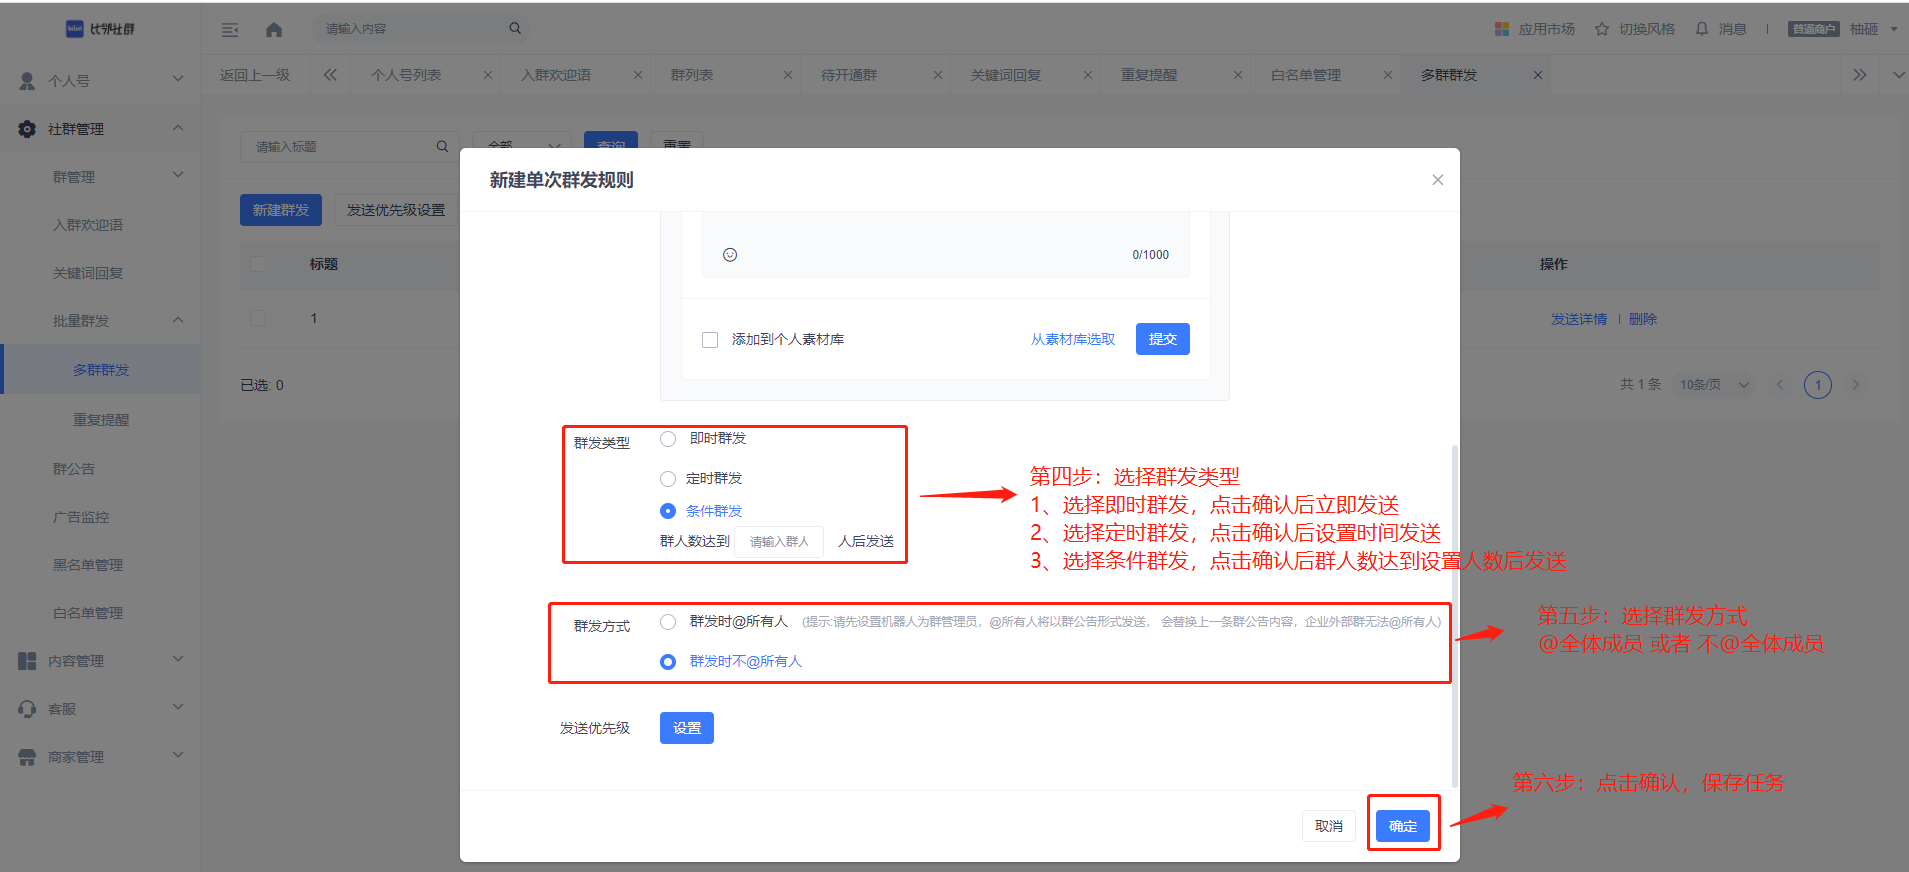 中文版手机电子琴软件下载_whatsapp中文手机版_中文版手机电子琴